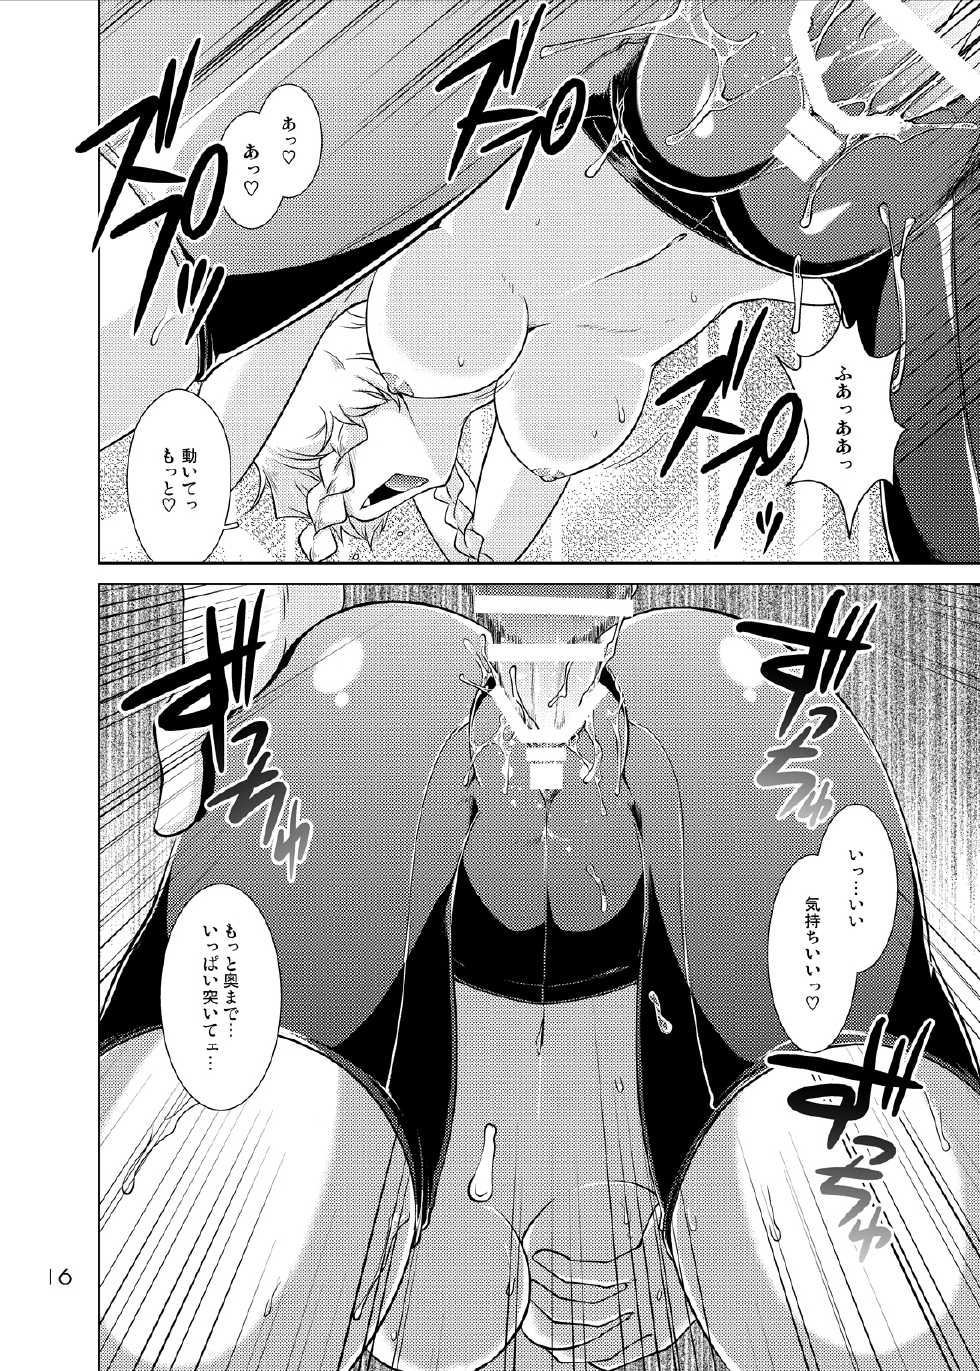 [GENOCIDE (Hattori Gorou)] Spats;Gate PART 6 Jisseki Kaijo no Fatality (Steins;Gate) [Digital] - Page 15